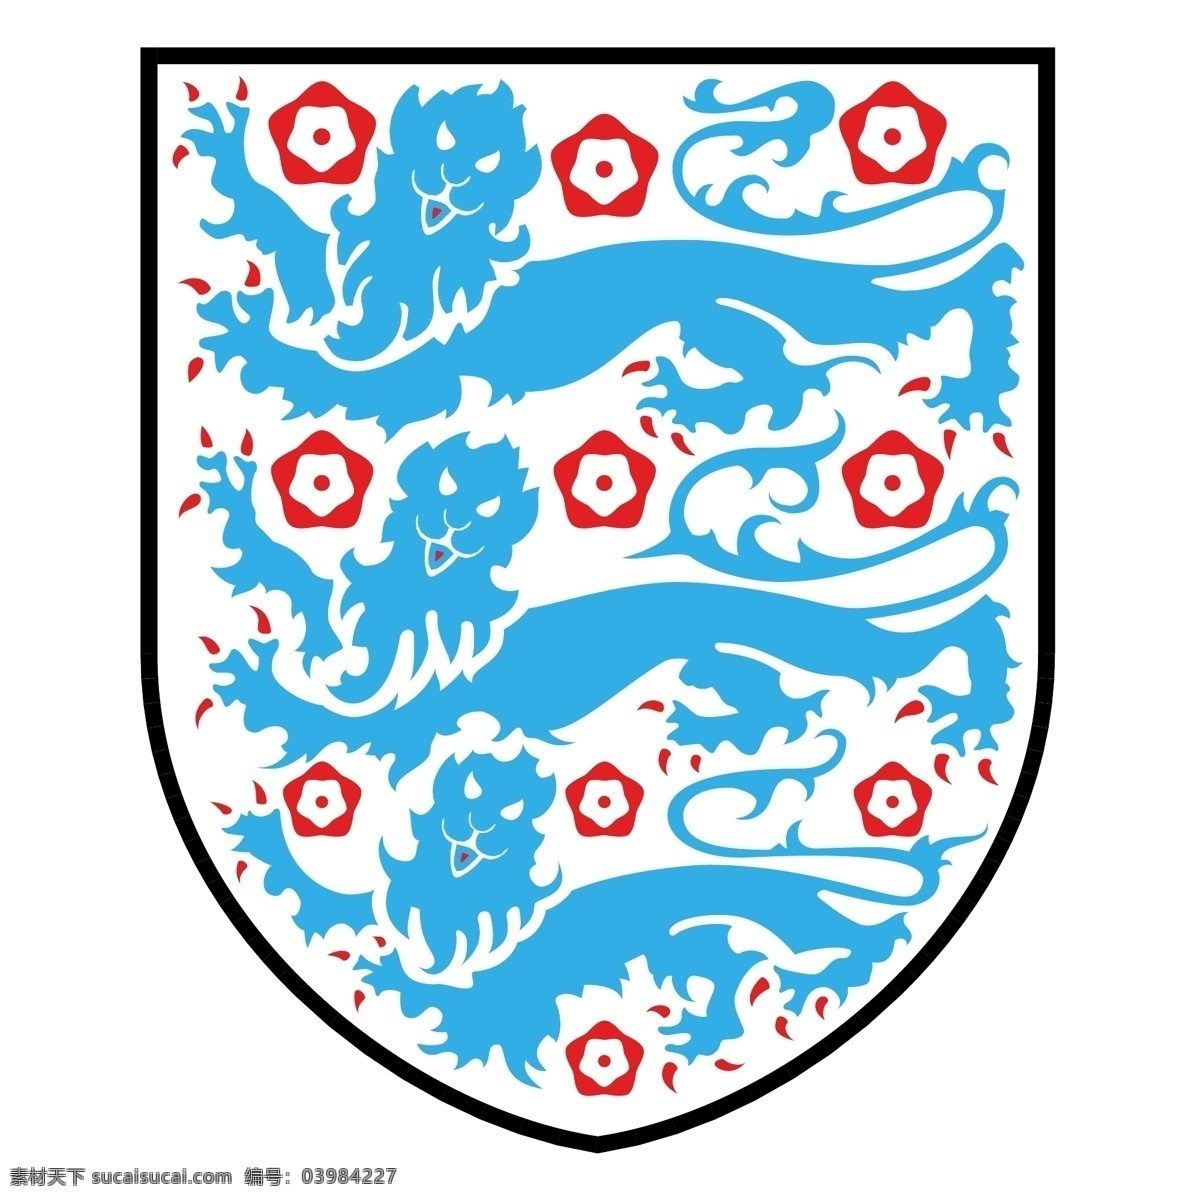 英格兰 足球 协会 标识 公司 免费 品牌 品牌标识 商标 矢量标志下载 免费矢量标识 矢量 psd源文件 logo设计